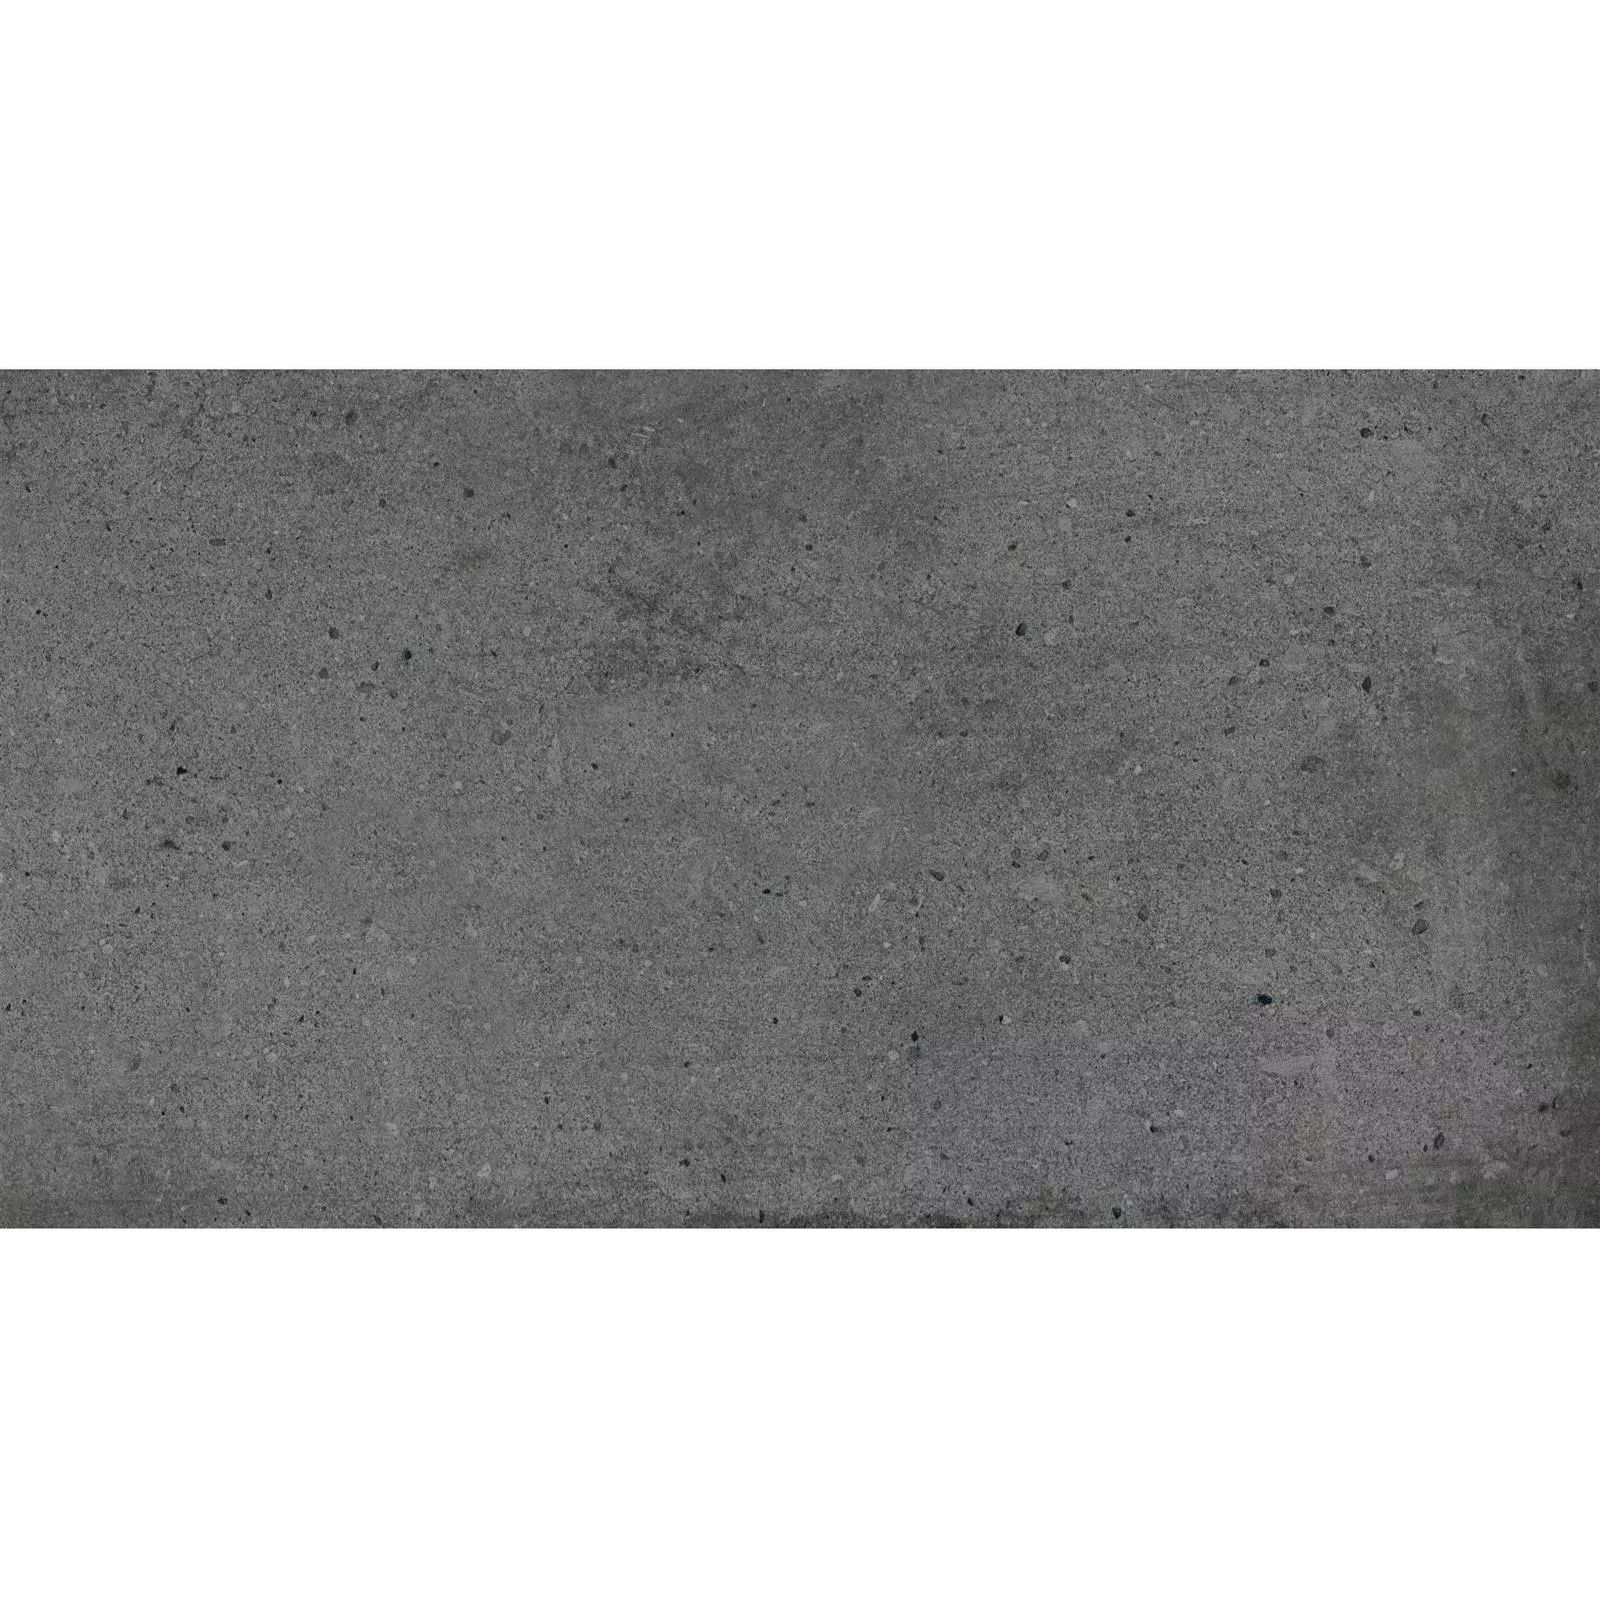 Ladrilhos Freeland Olhar de Pedra R10/B Antracite 30x60cm